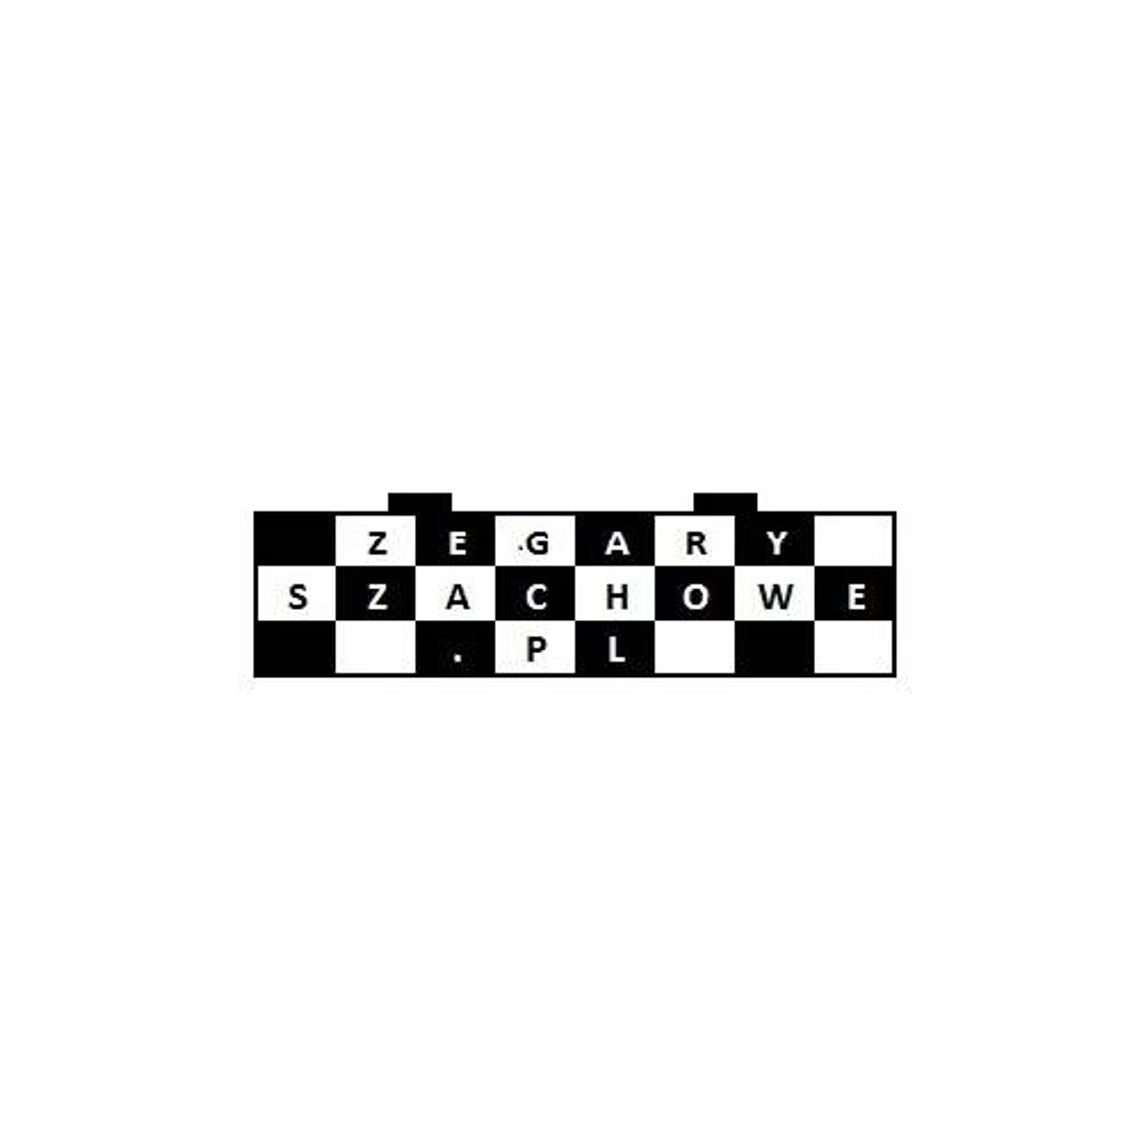 Zegaryszachowe.pl - szachy i akcesoria szachowe 